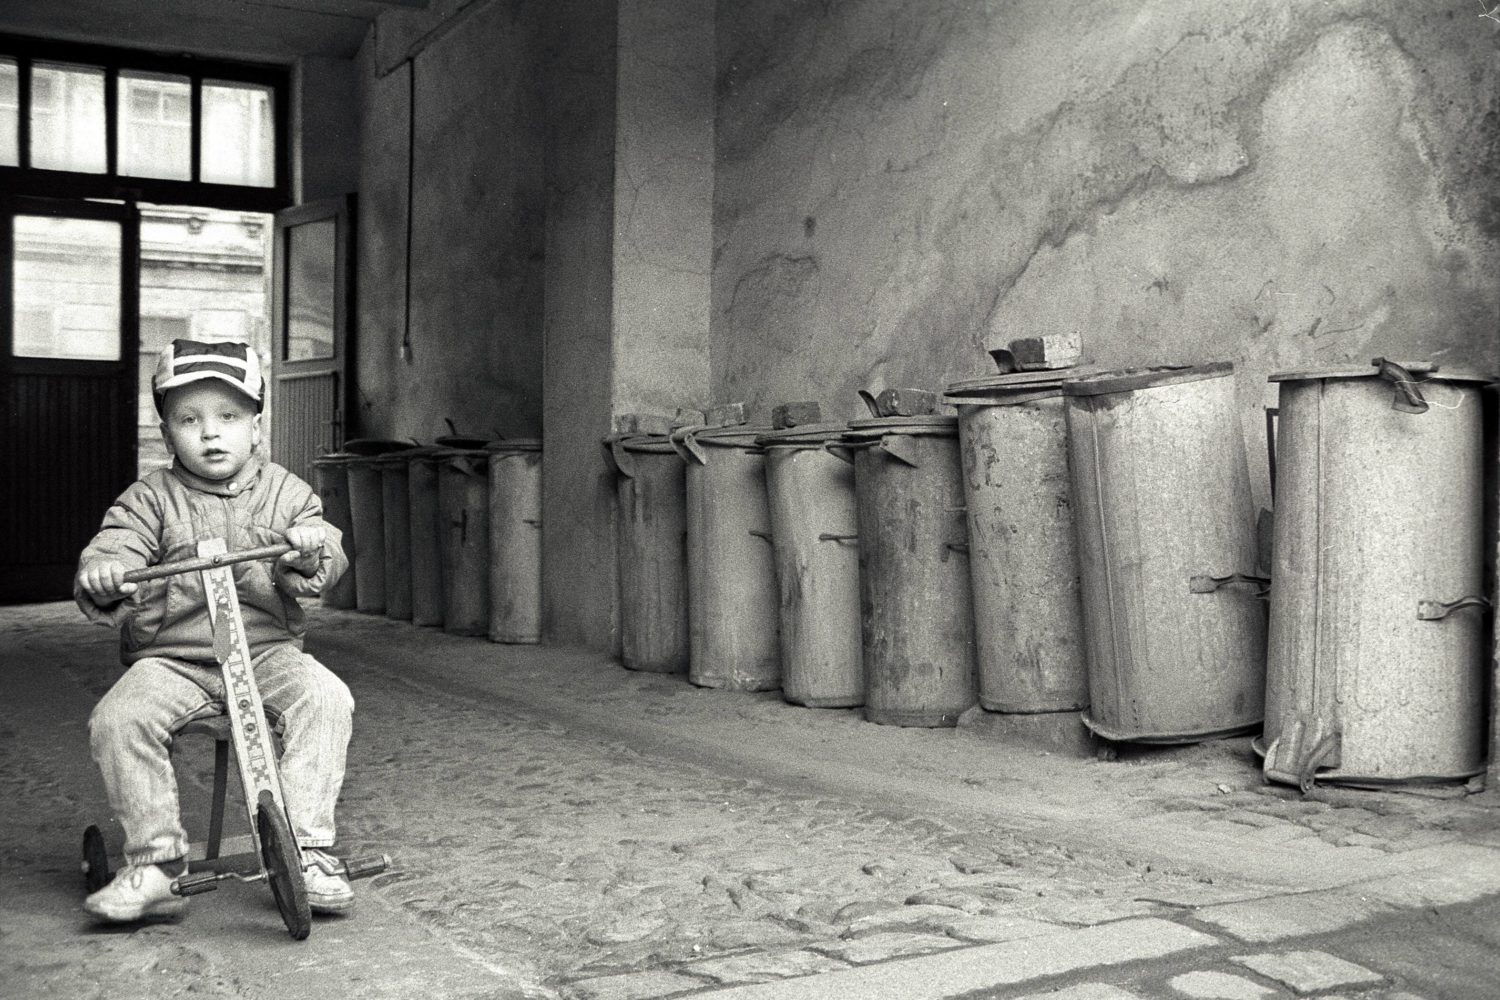 Einsamkeit in Berlin: Einsamer Junge fährt Dreirad in einem tristen Berliner Hauseingang, 1989. Foto: Imago/Dieter Matthes